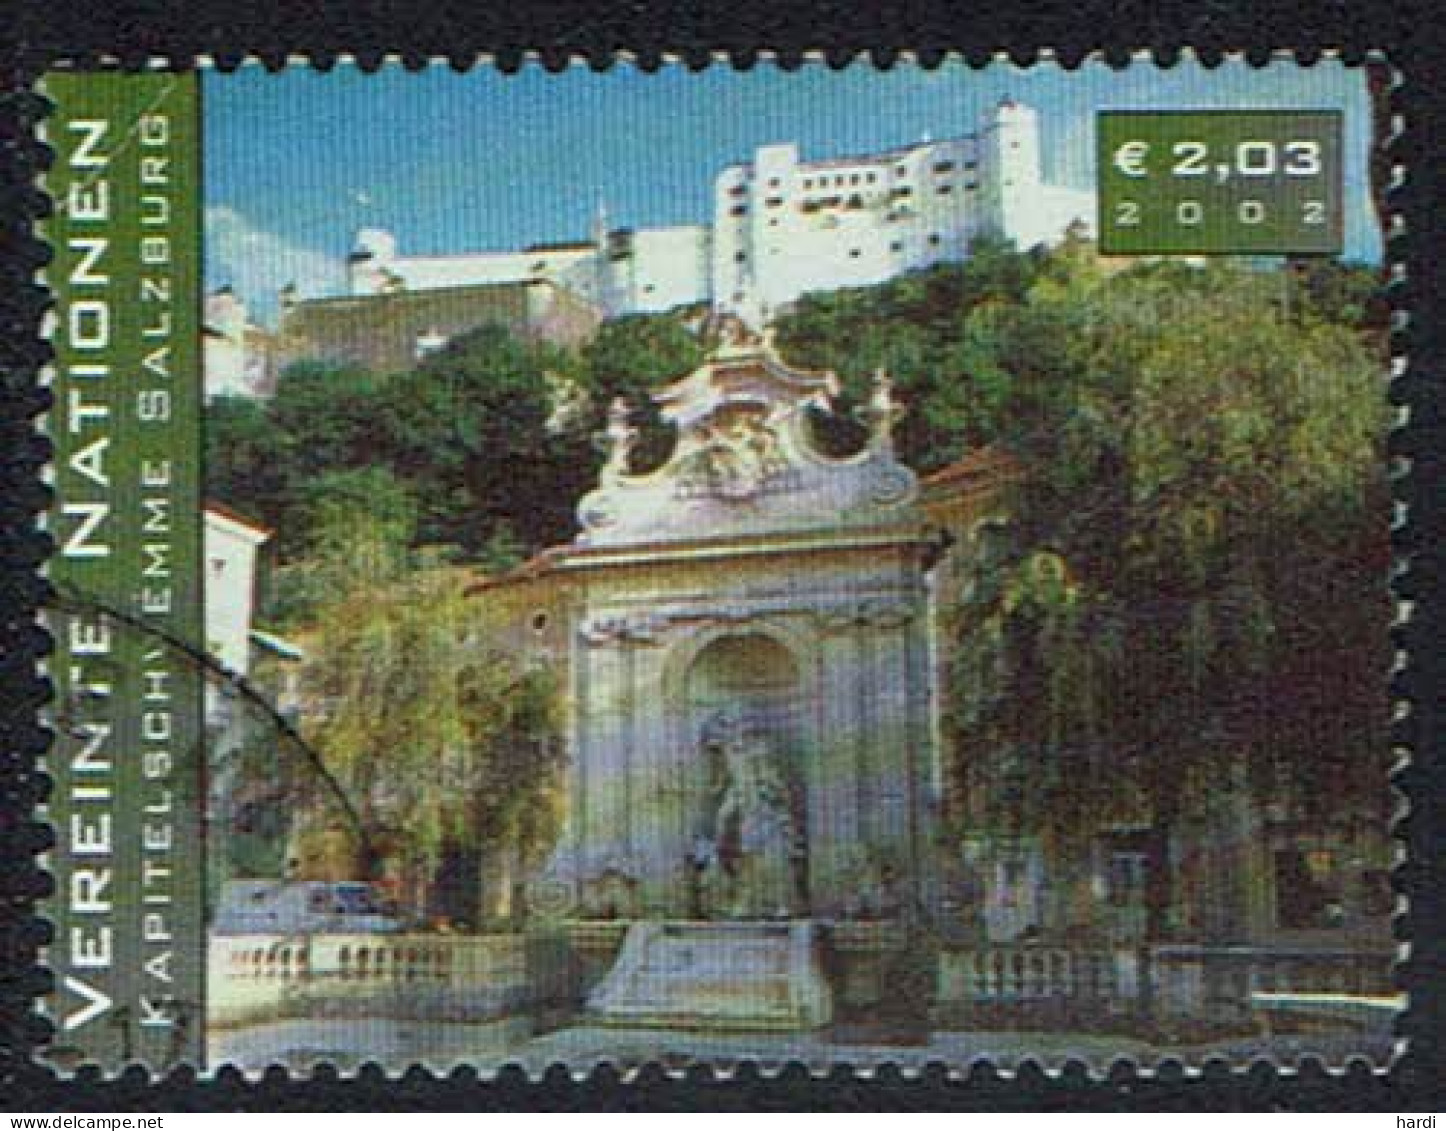 Vereinte Nationen Wien 2002, MiNr 356, Gestempelt - Used Stamps